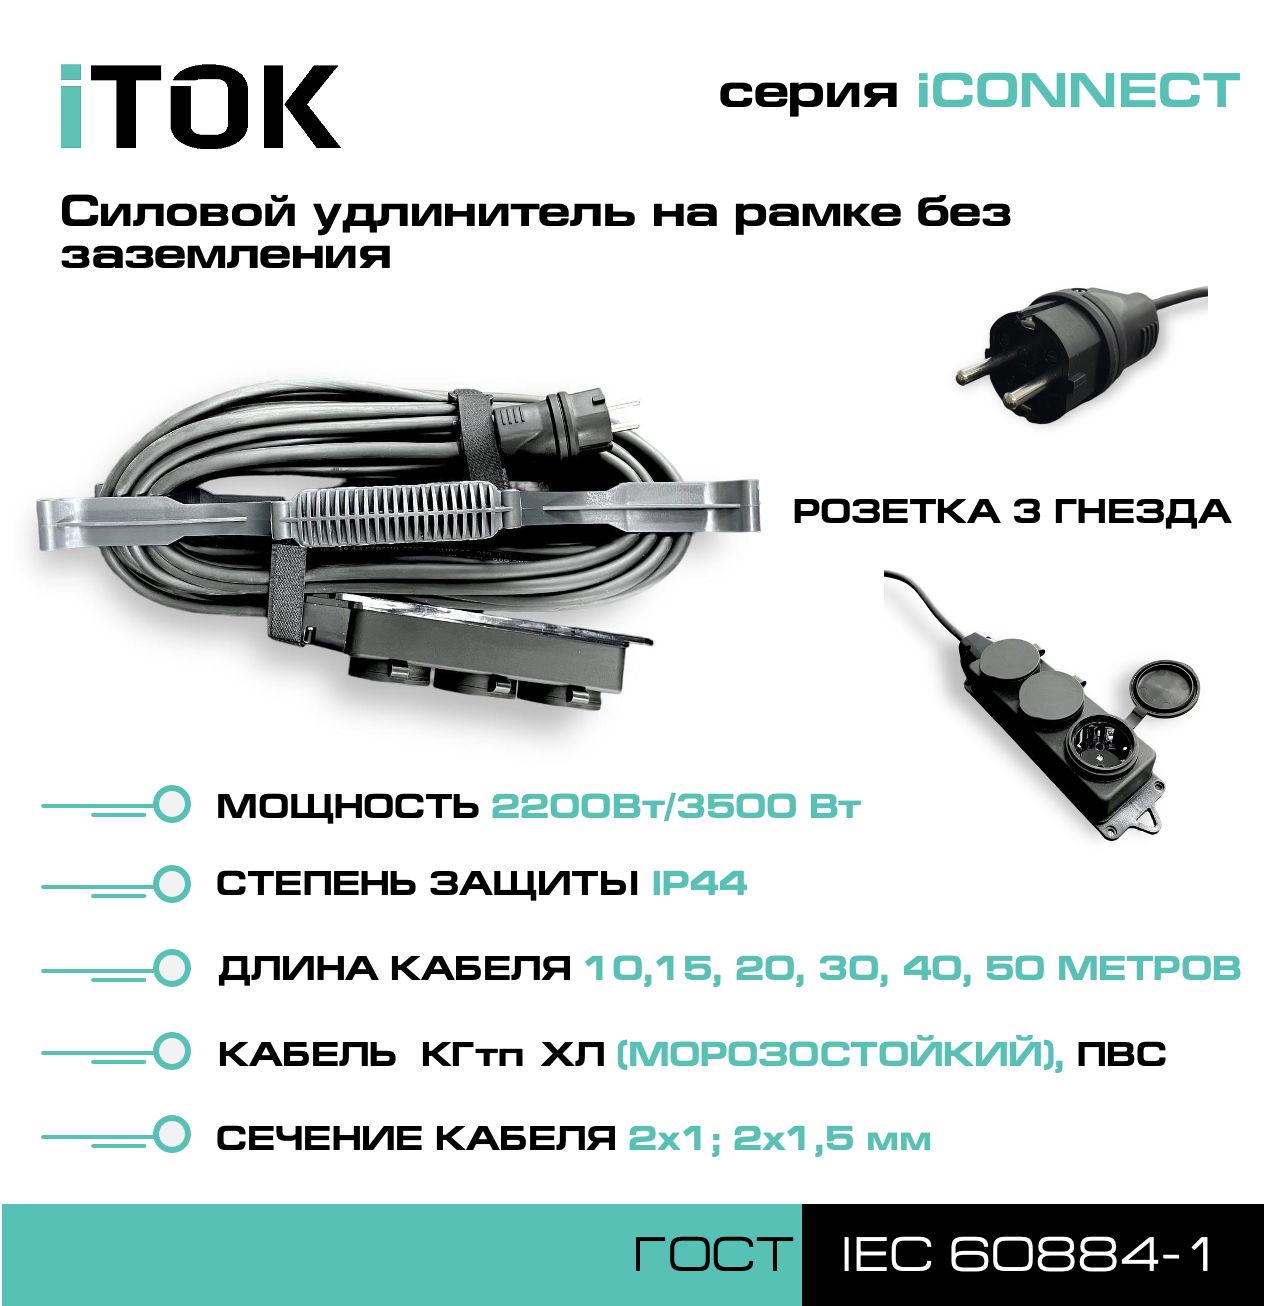 Удлинитель на рамке без земли серии iTOK iCONNECT КГтп-ХЛ 2х1,5 мм 3 гнезда IP44 40 м зарядные гнезда usb в виде клавиши marina 3 1 а more 10264236